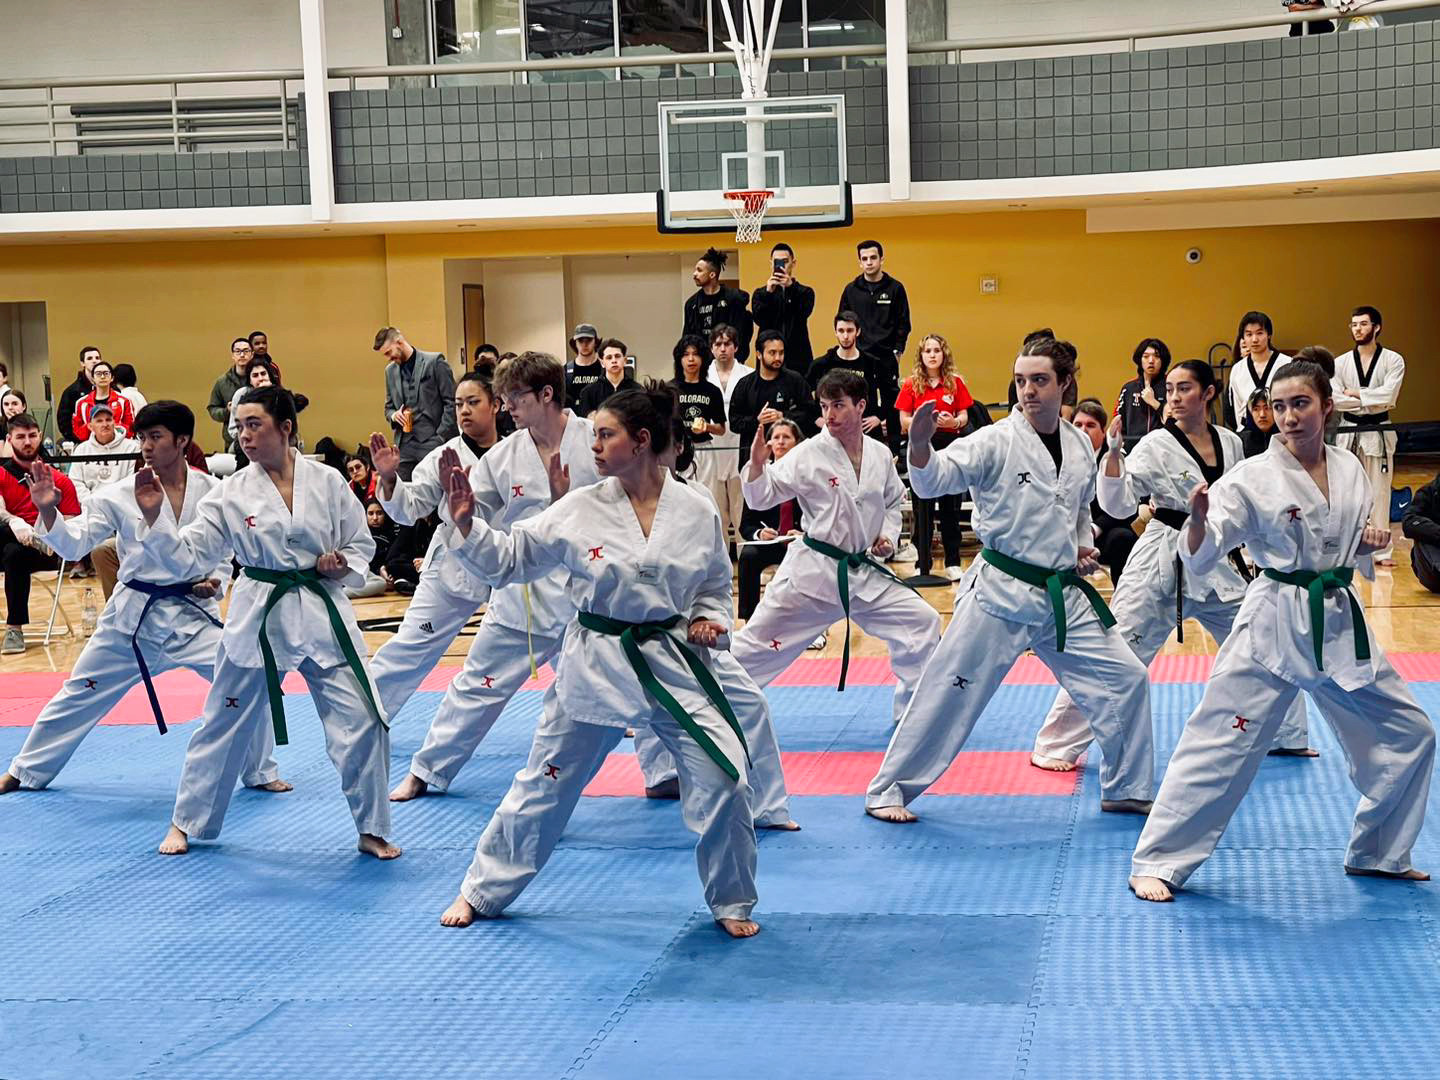 The United States has named its taekwondo athletes for this summer's postponed Chengdu 2021 FISU World University Games ©Chengdu 2021